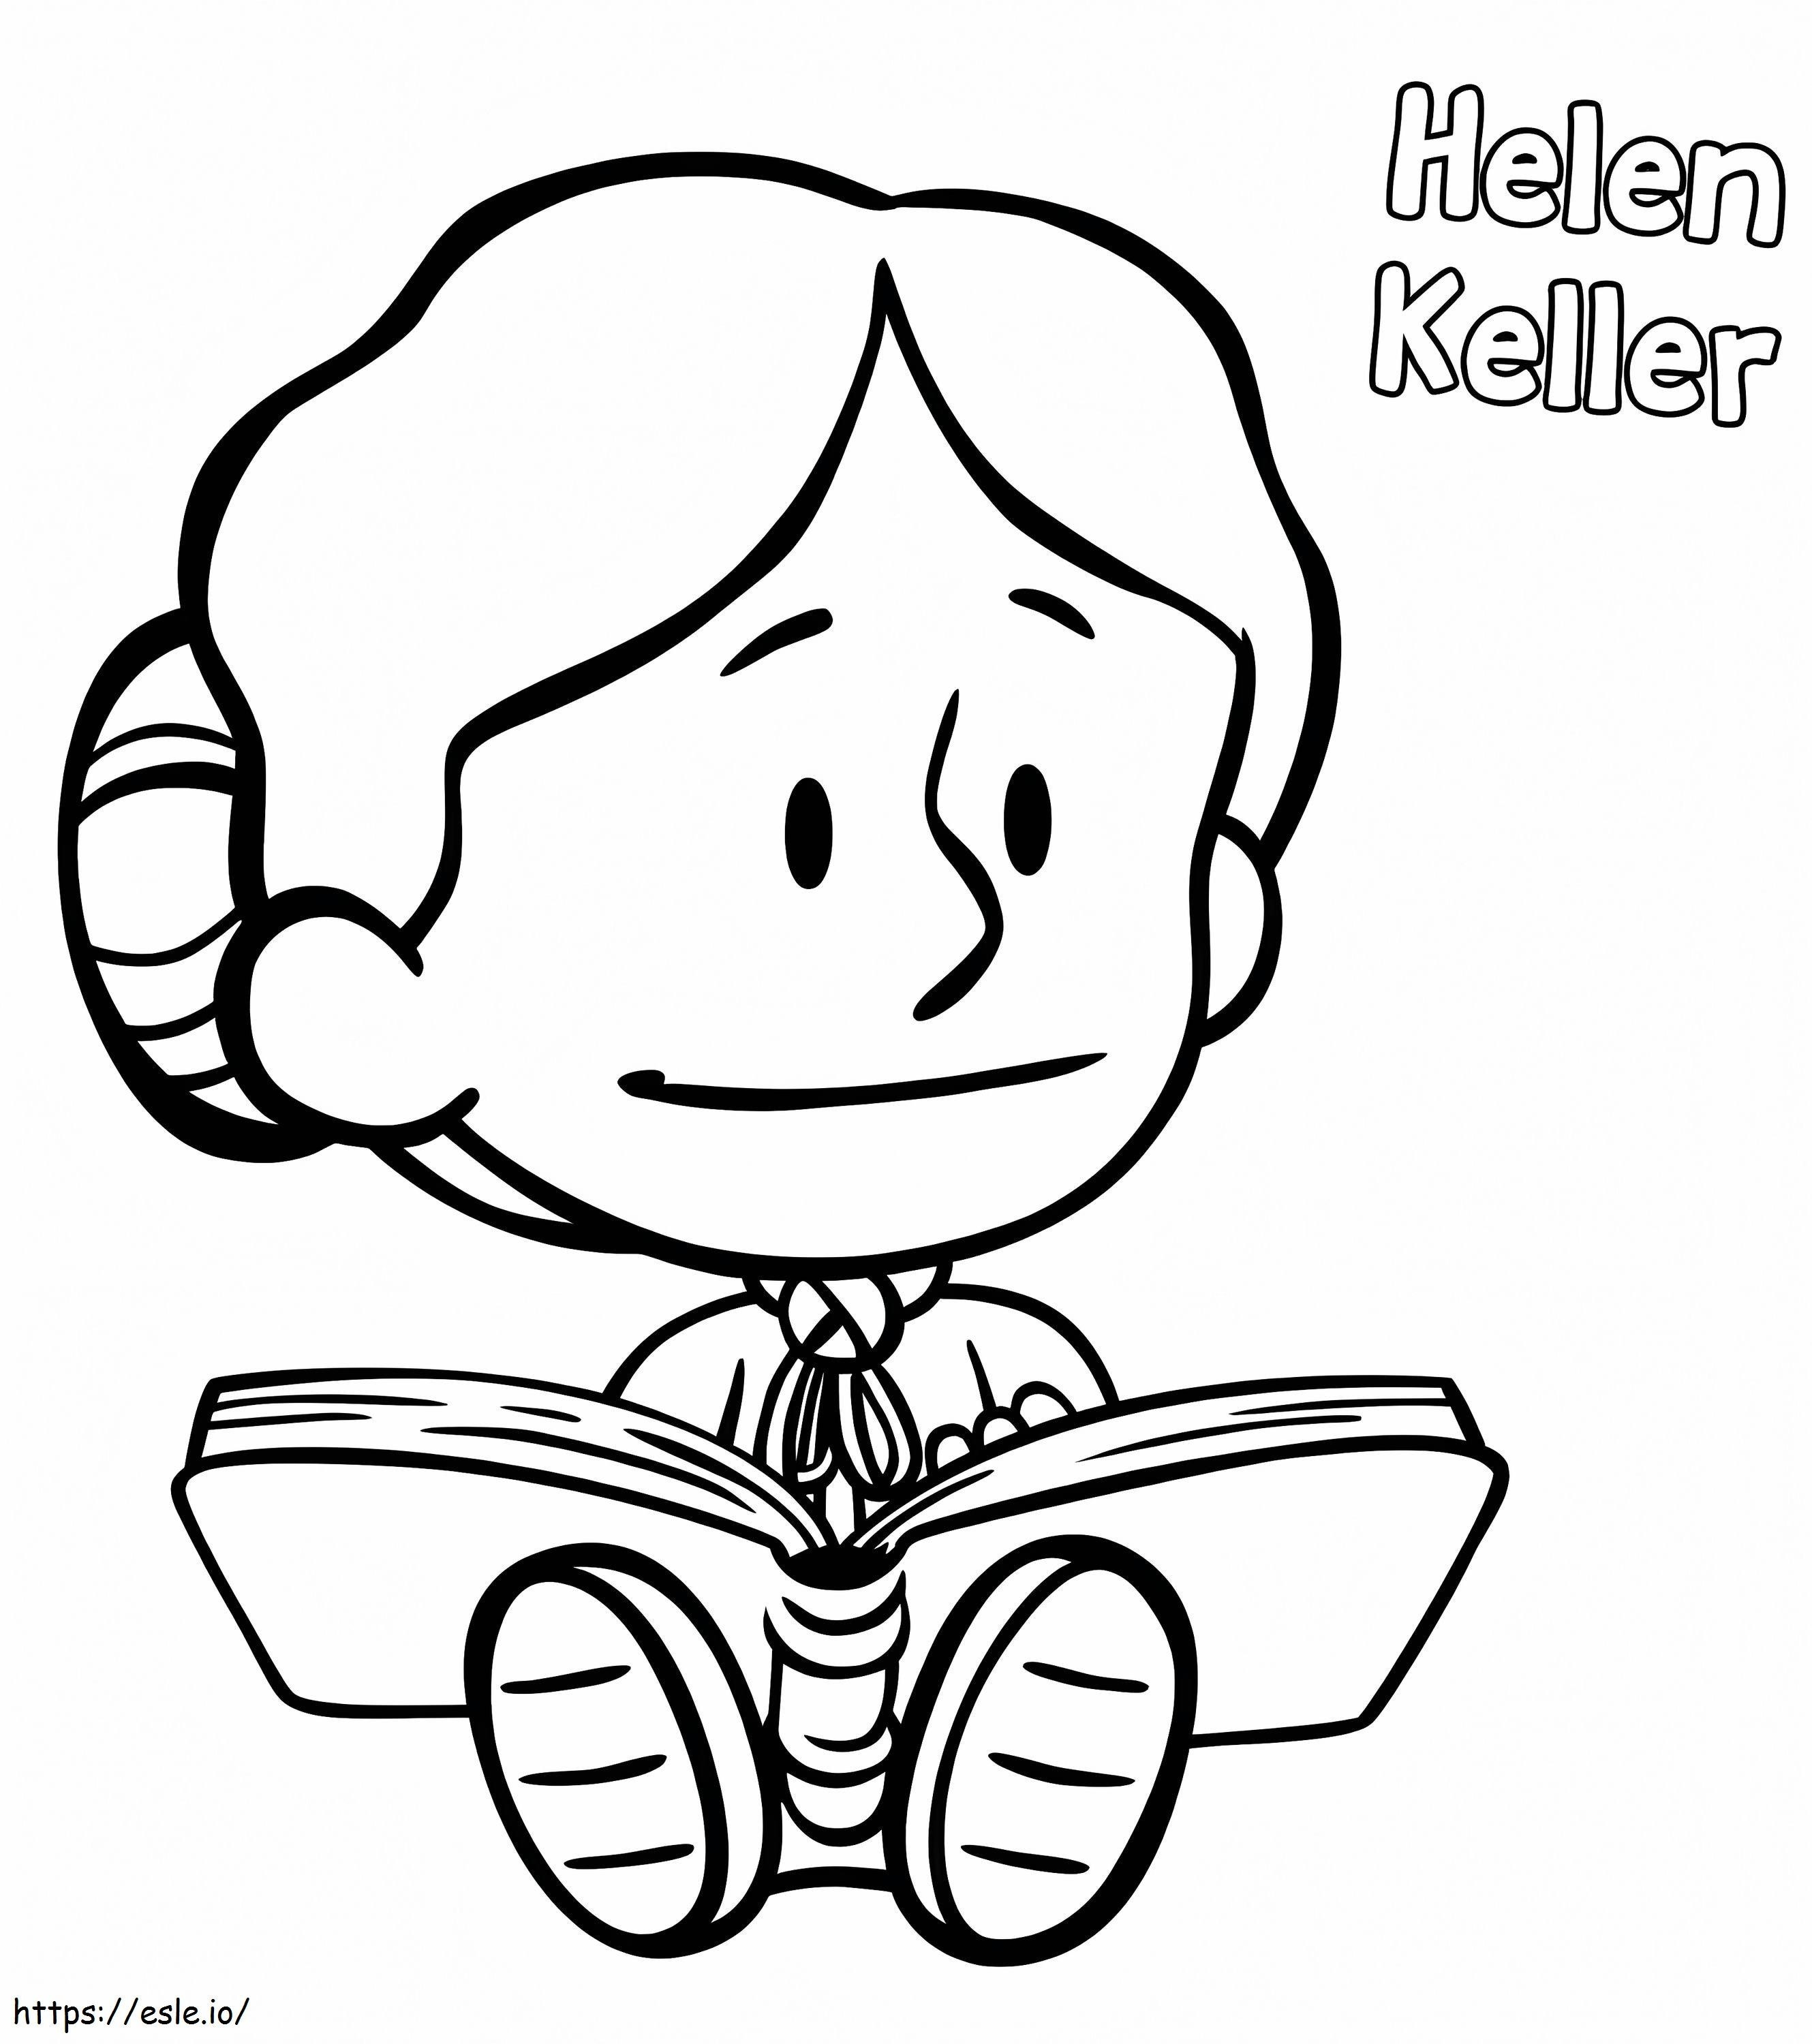 Helen Keller von Xavier Riddle ausmalbilder